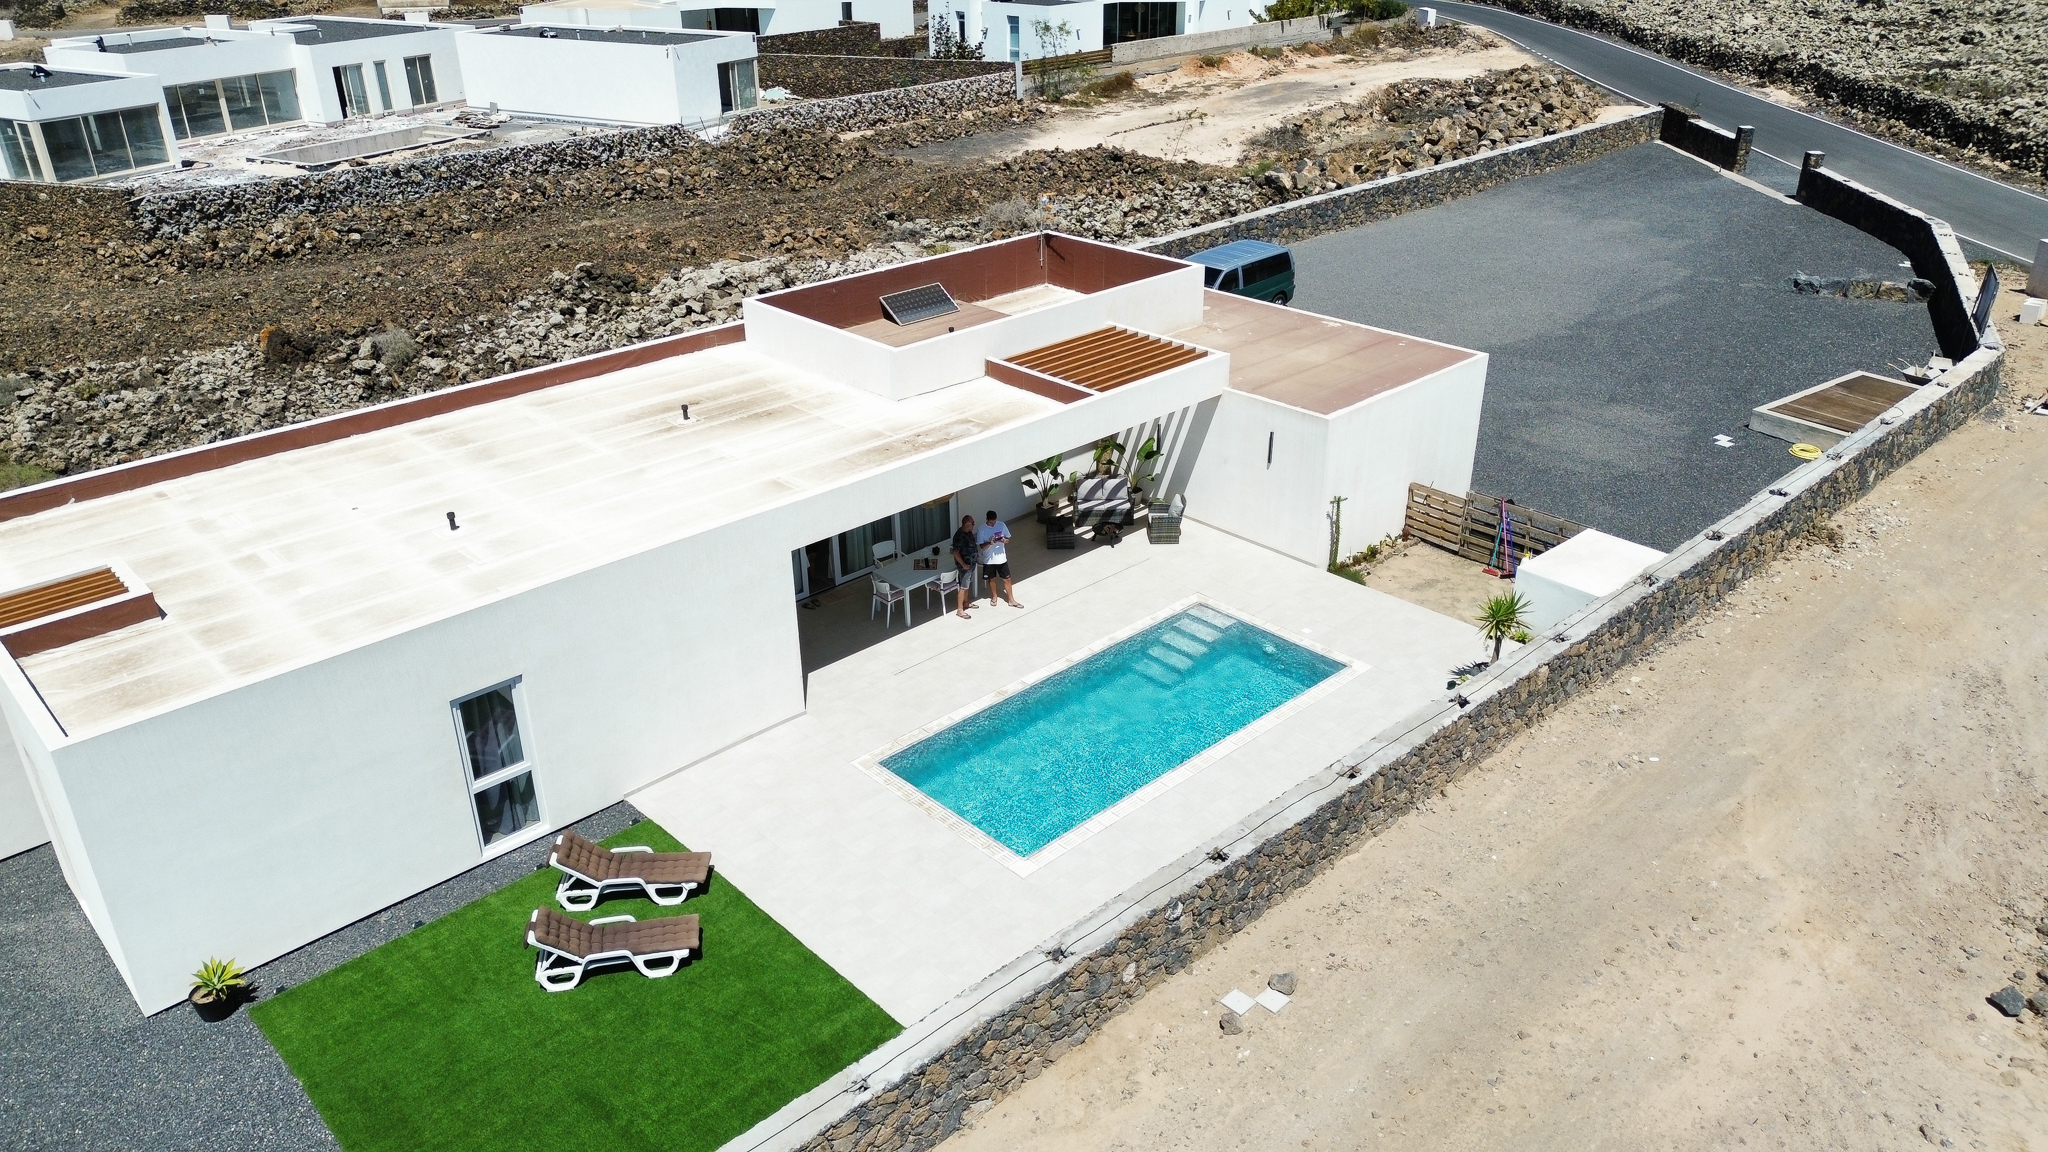 Vista drom, fachada bioconstrucción casa prefabricada zona piscina